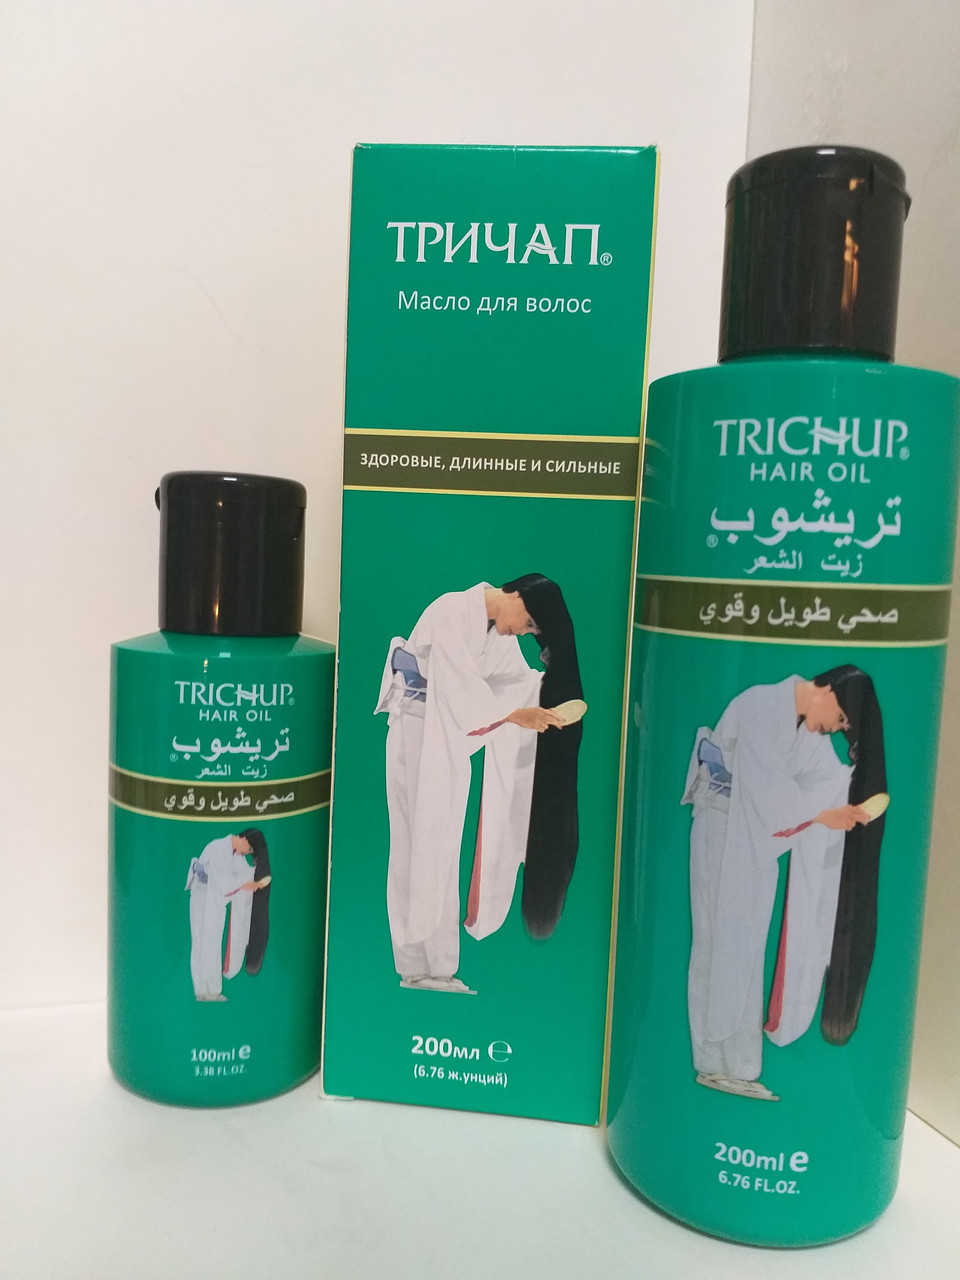 Тричап масло - Здоровые, Длинные и Сильные (Trichup Oil Healthy, Long ) 200мл